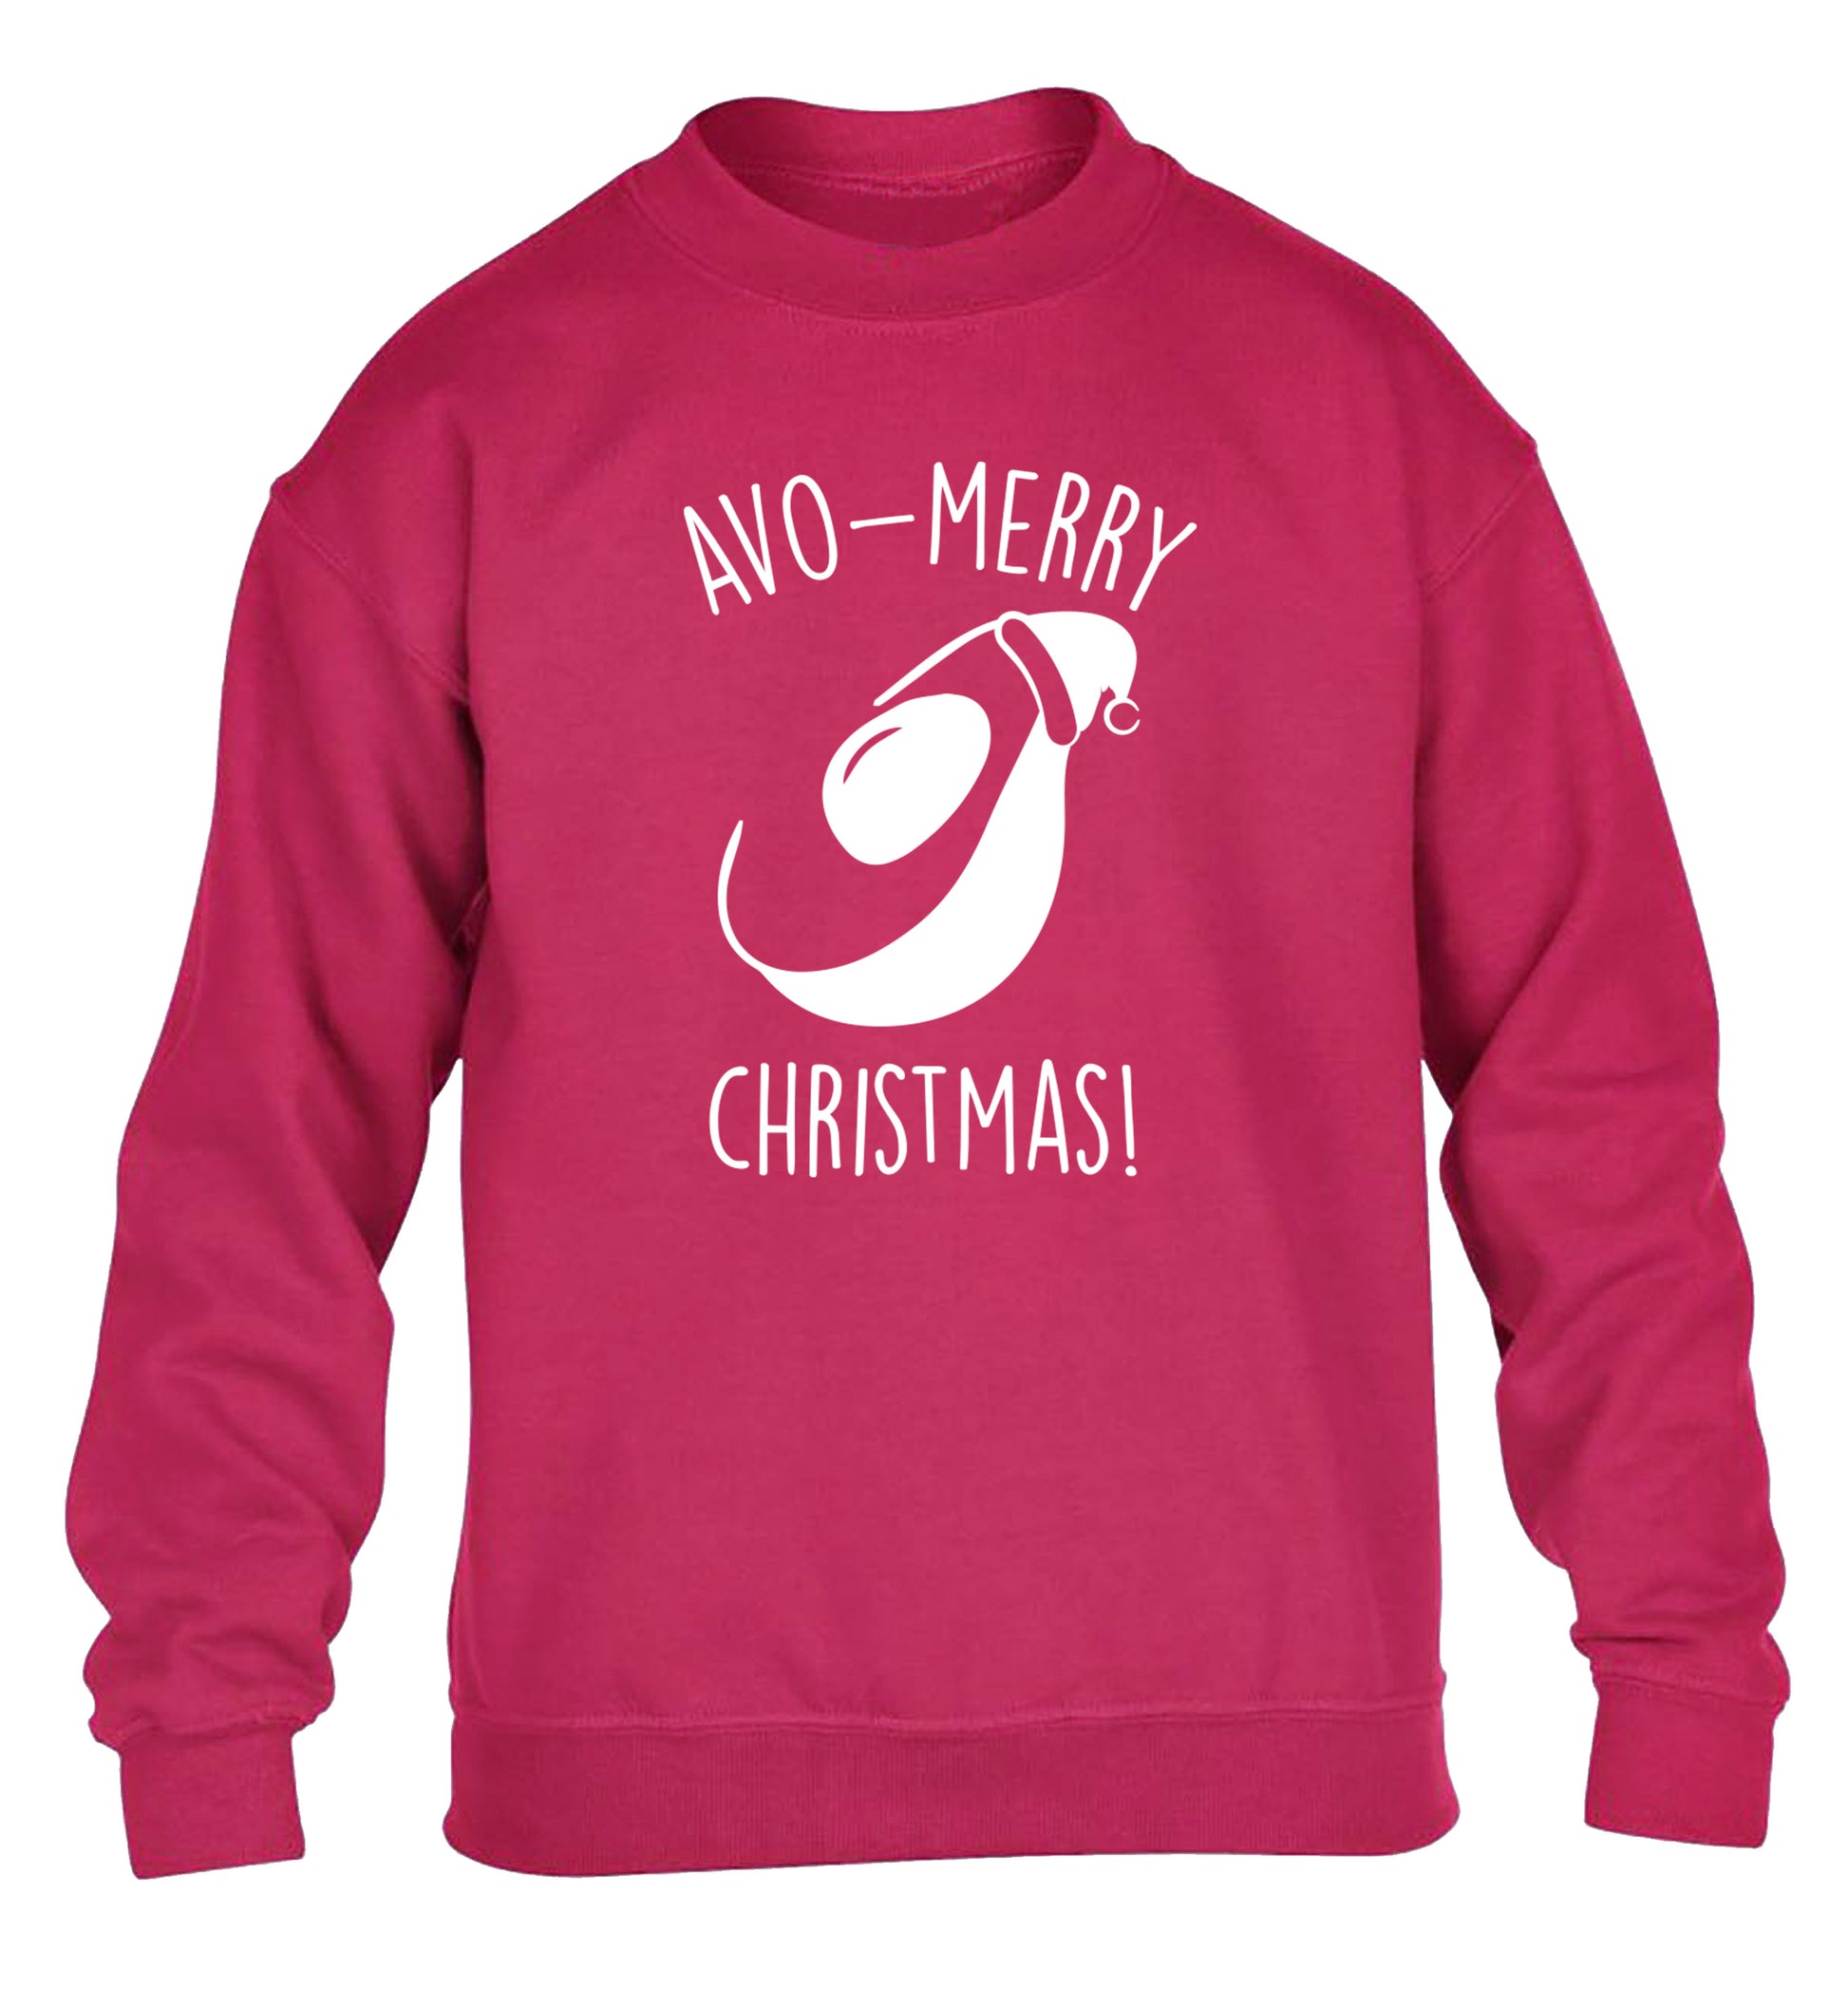 Avo-Merry Christmas children's pink sweater 12-13 Years